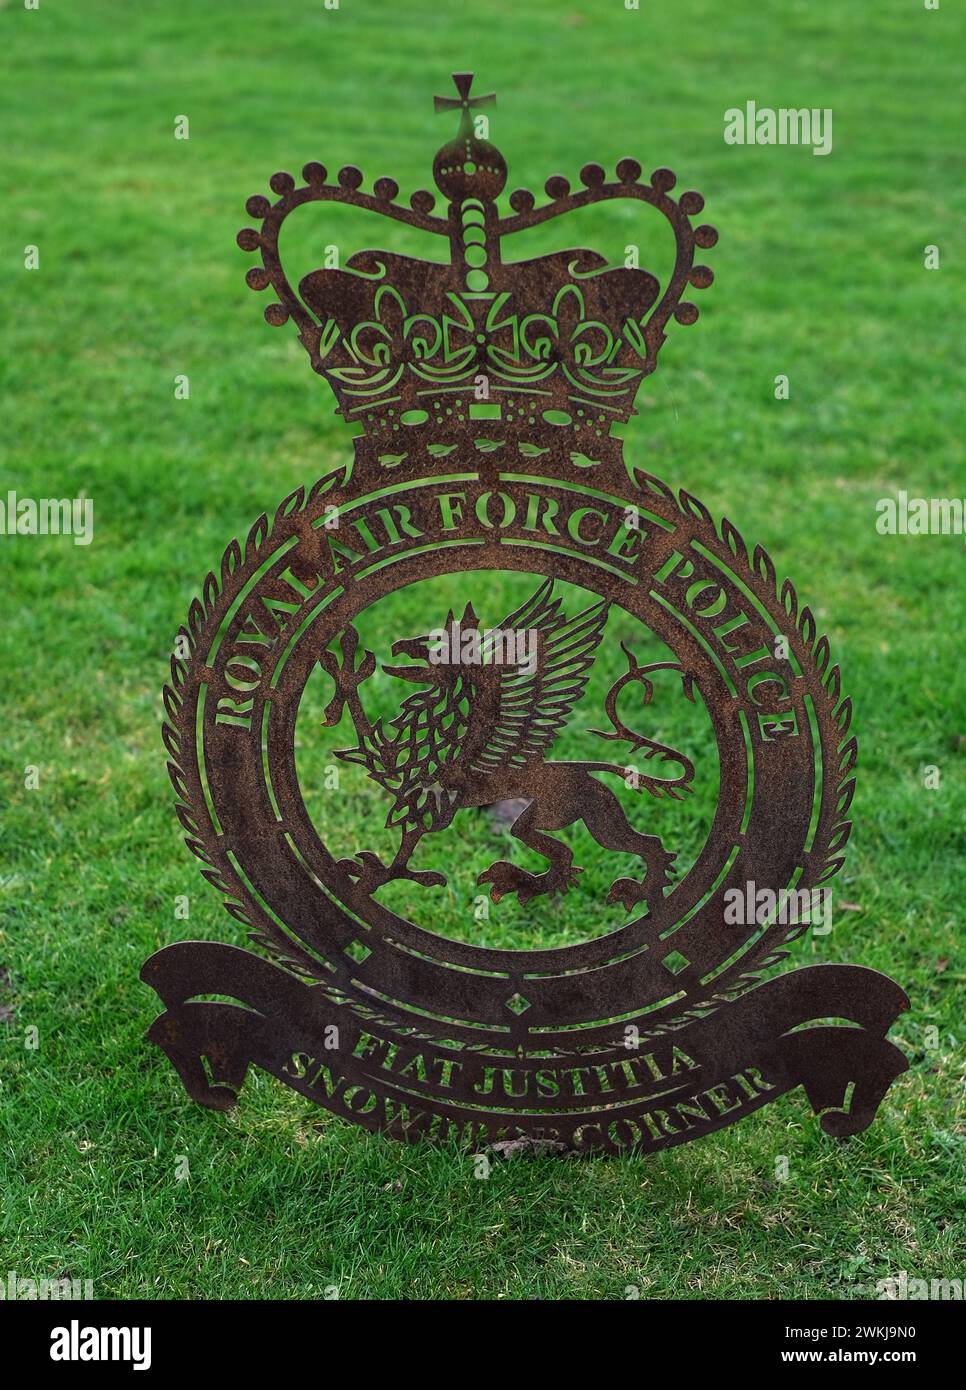 Die Royal Air Force Police ist die Dienstpolizeiabteilung der Royal Air Force, die vom Propstmarschall der Royal Air Force geleitet wird Stockfoto